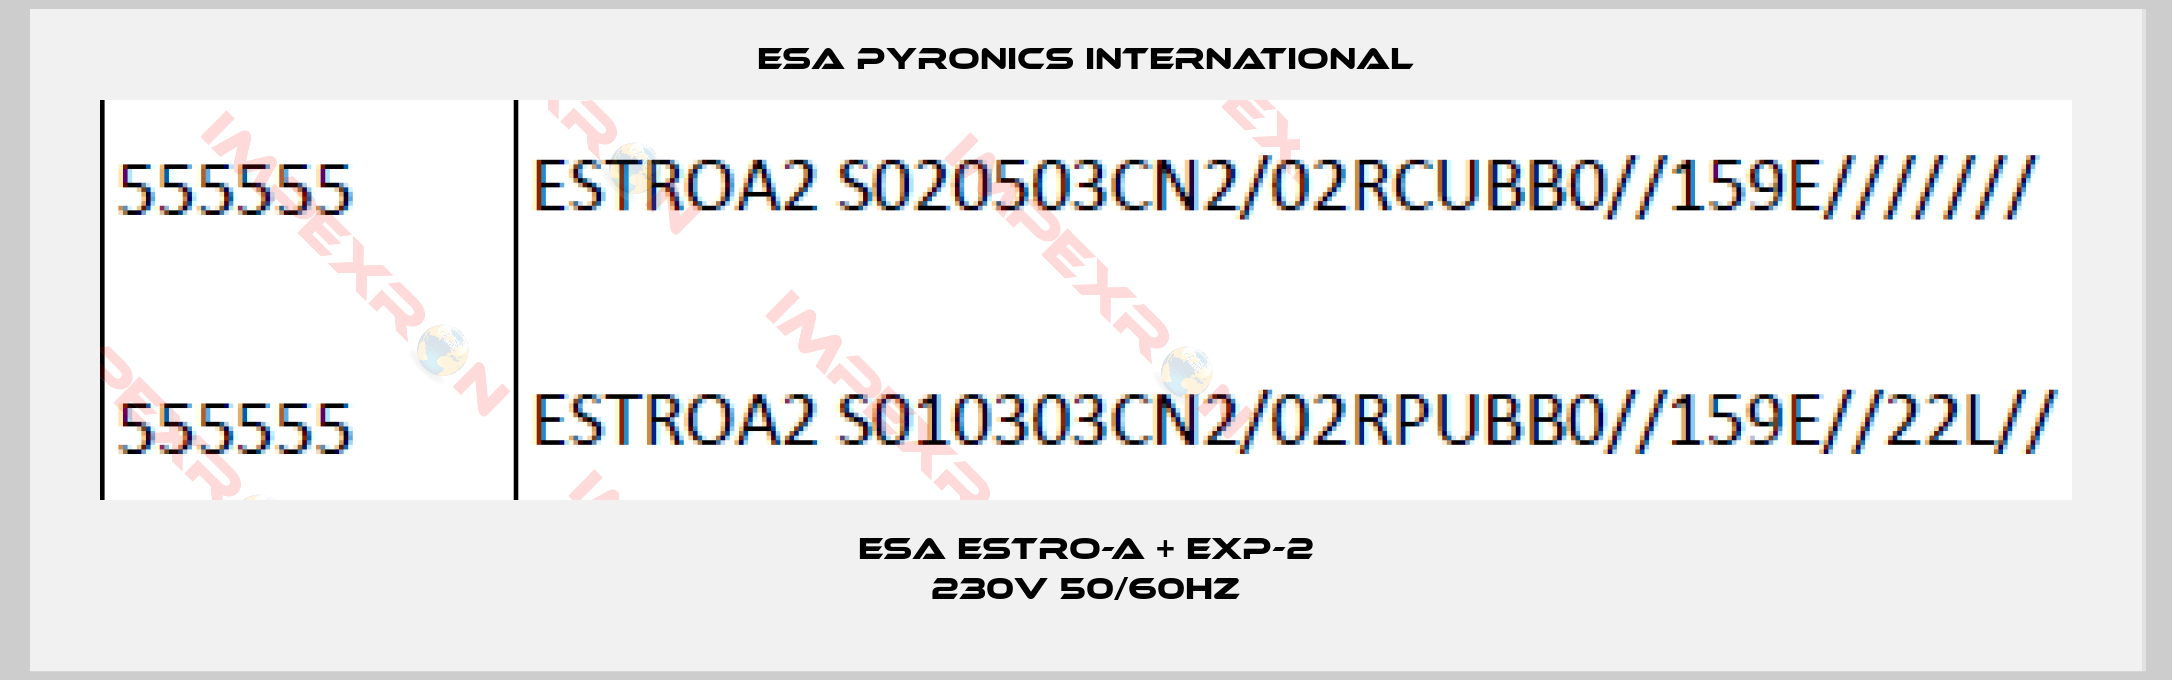 ESA Pyronics International-ESA ESTRO-A + EXP-2 230V 50/60Hz